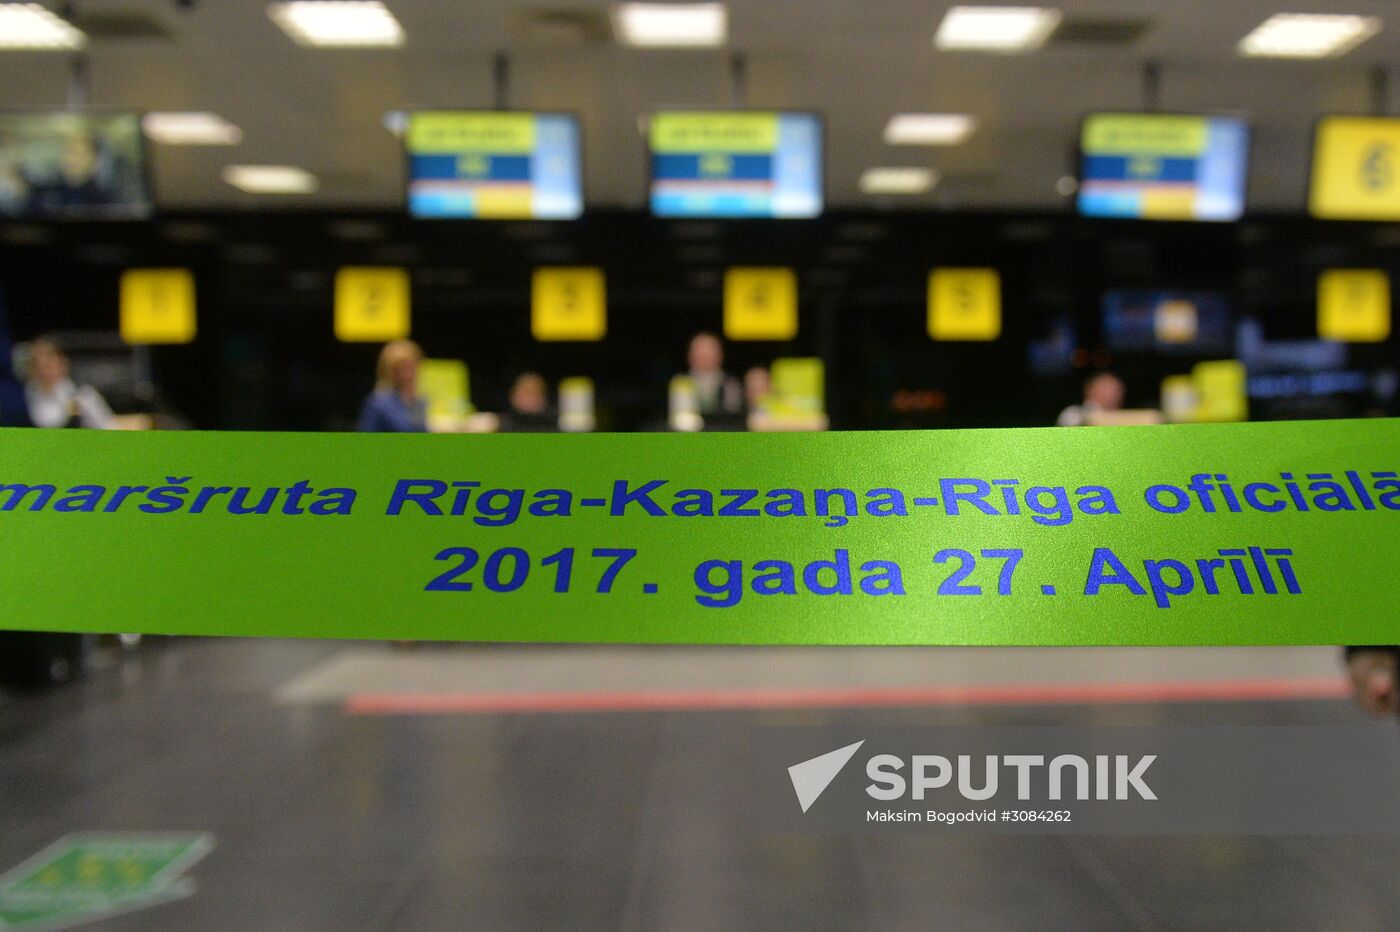 Kazan-Riga-Kazan route opens